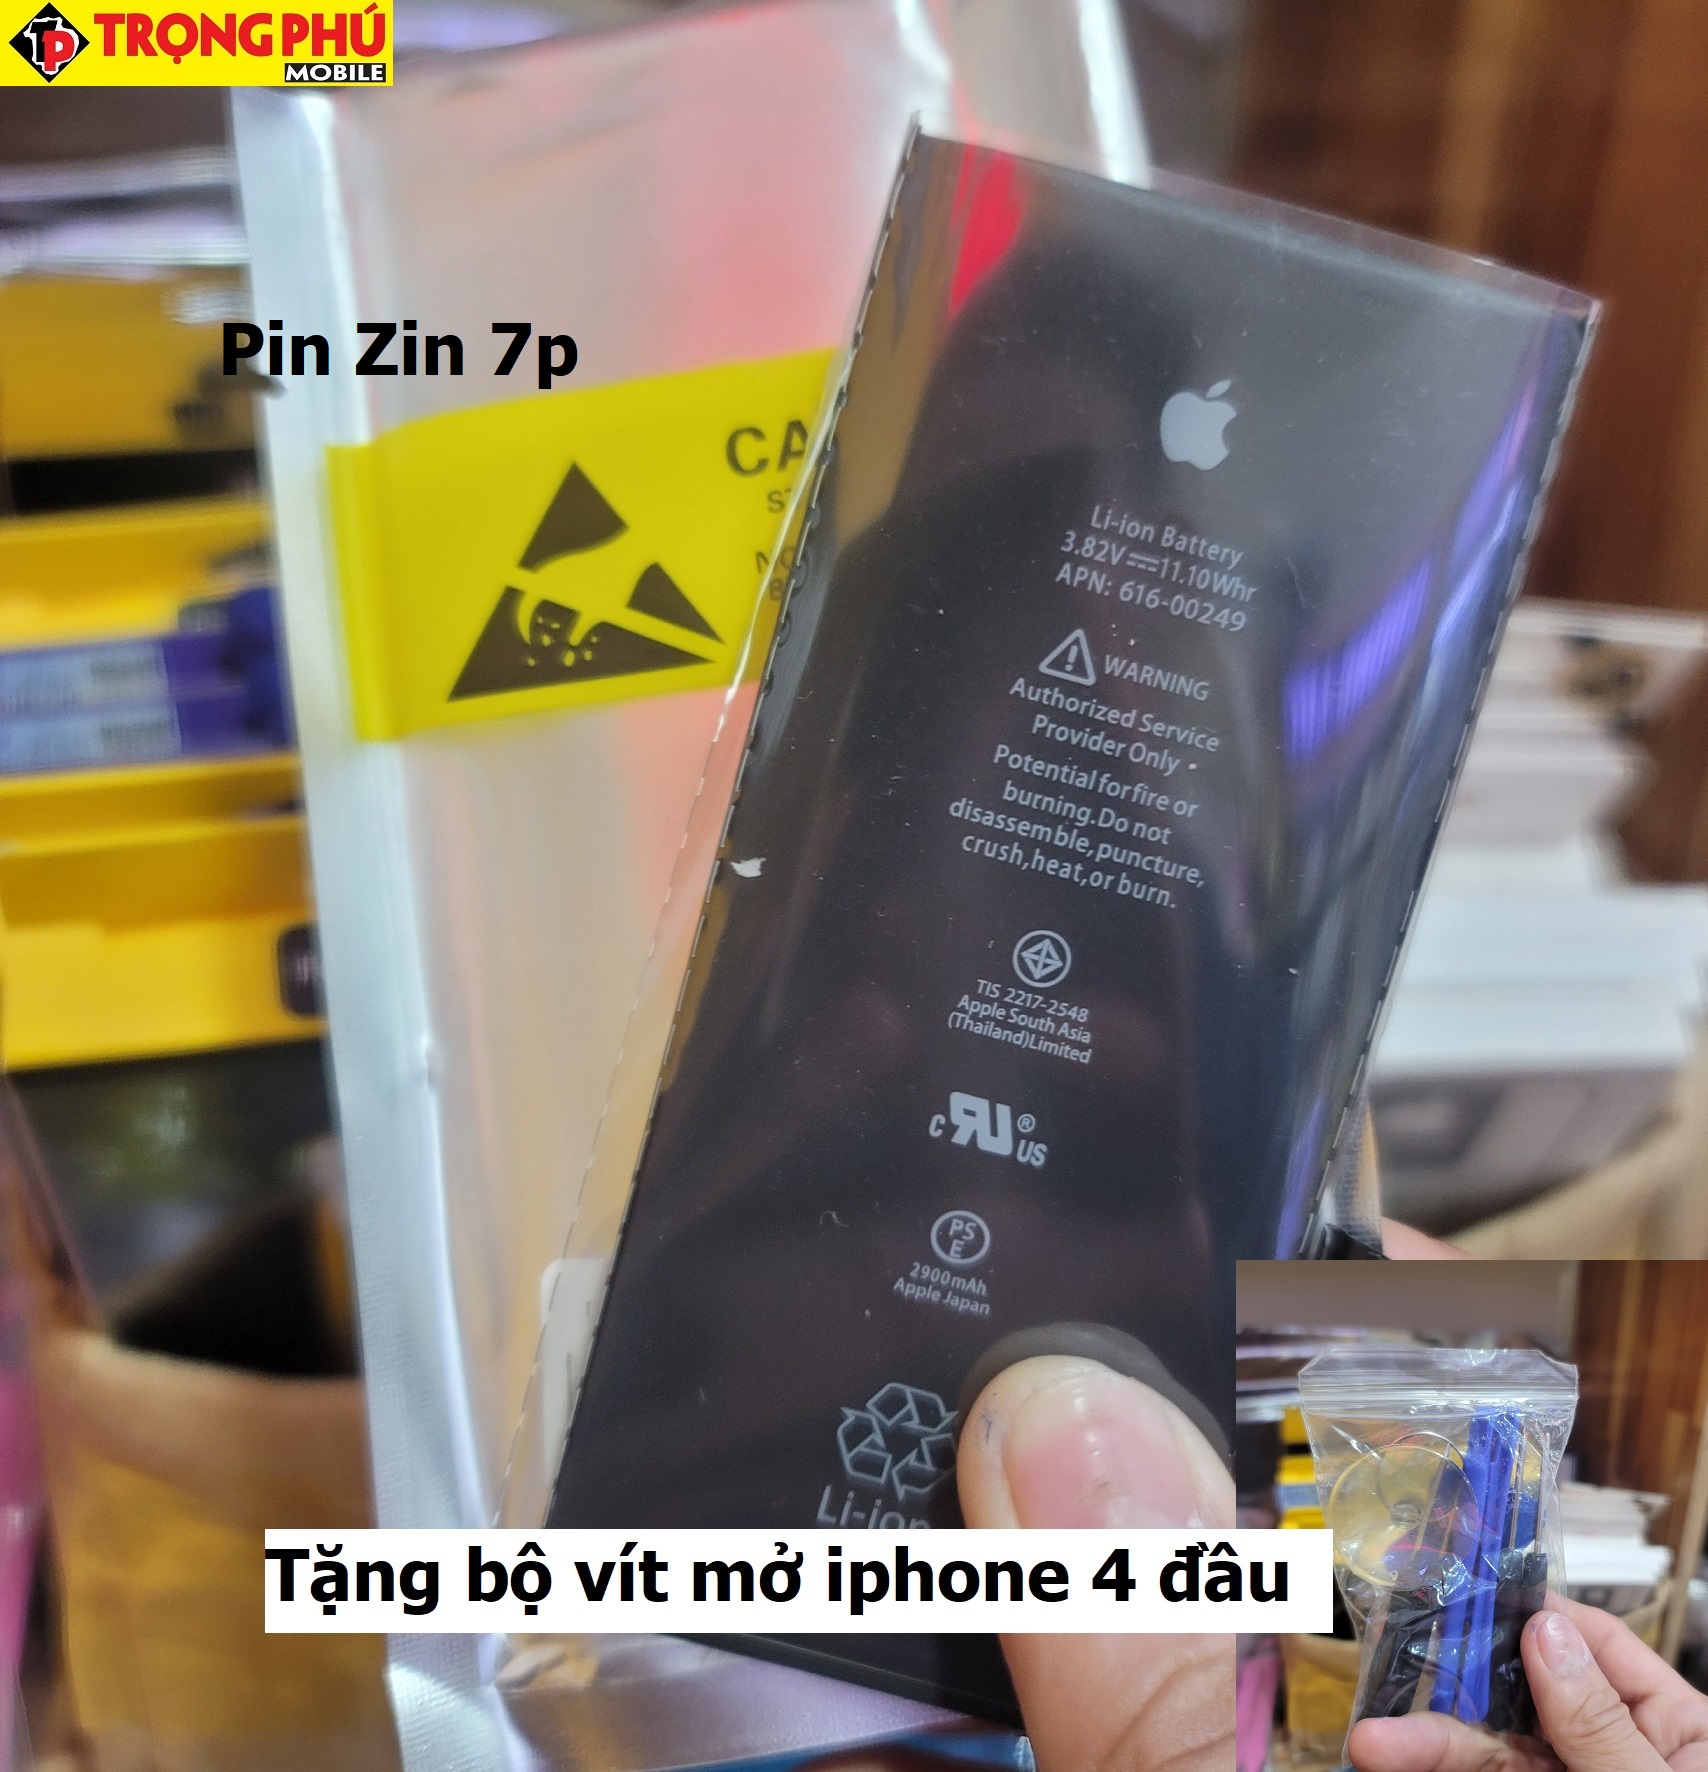 Thay pin IPhone 7Plus Chính hãng Pin Zin